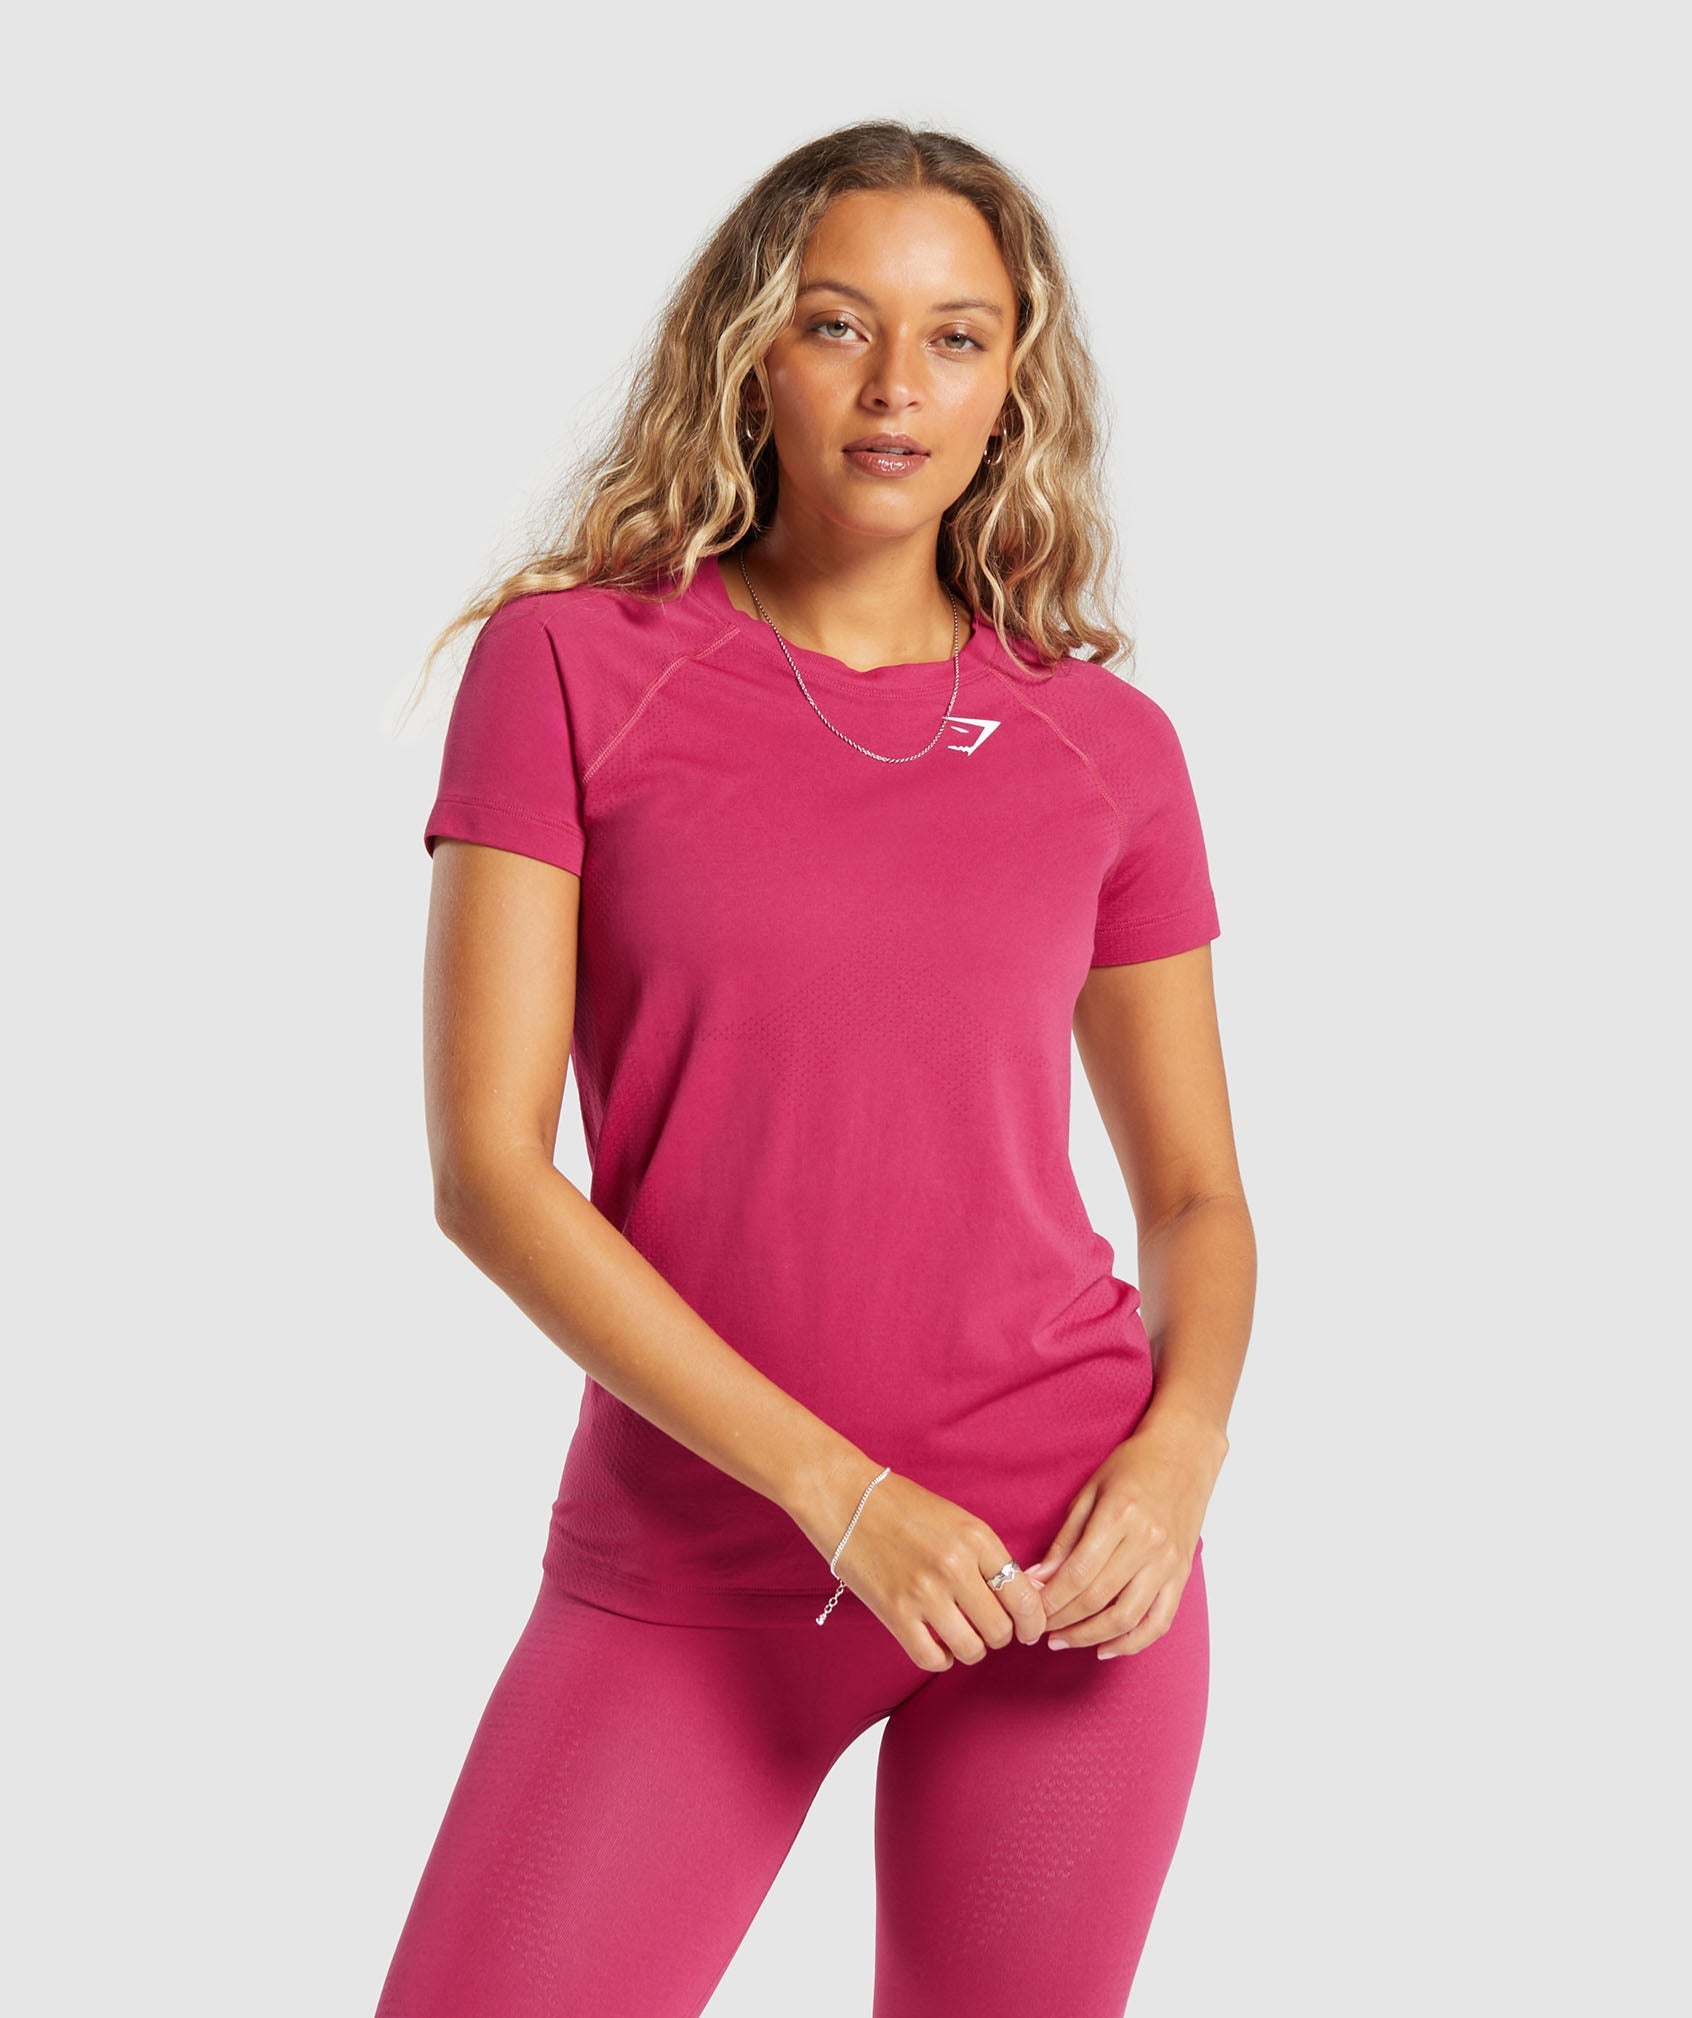 Vital Seamless  2.0 Light T Shirt in Vintage Pink/Marl ist nicht auf Lager